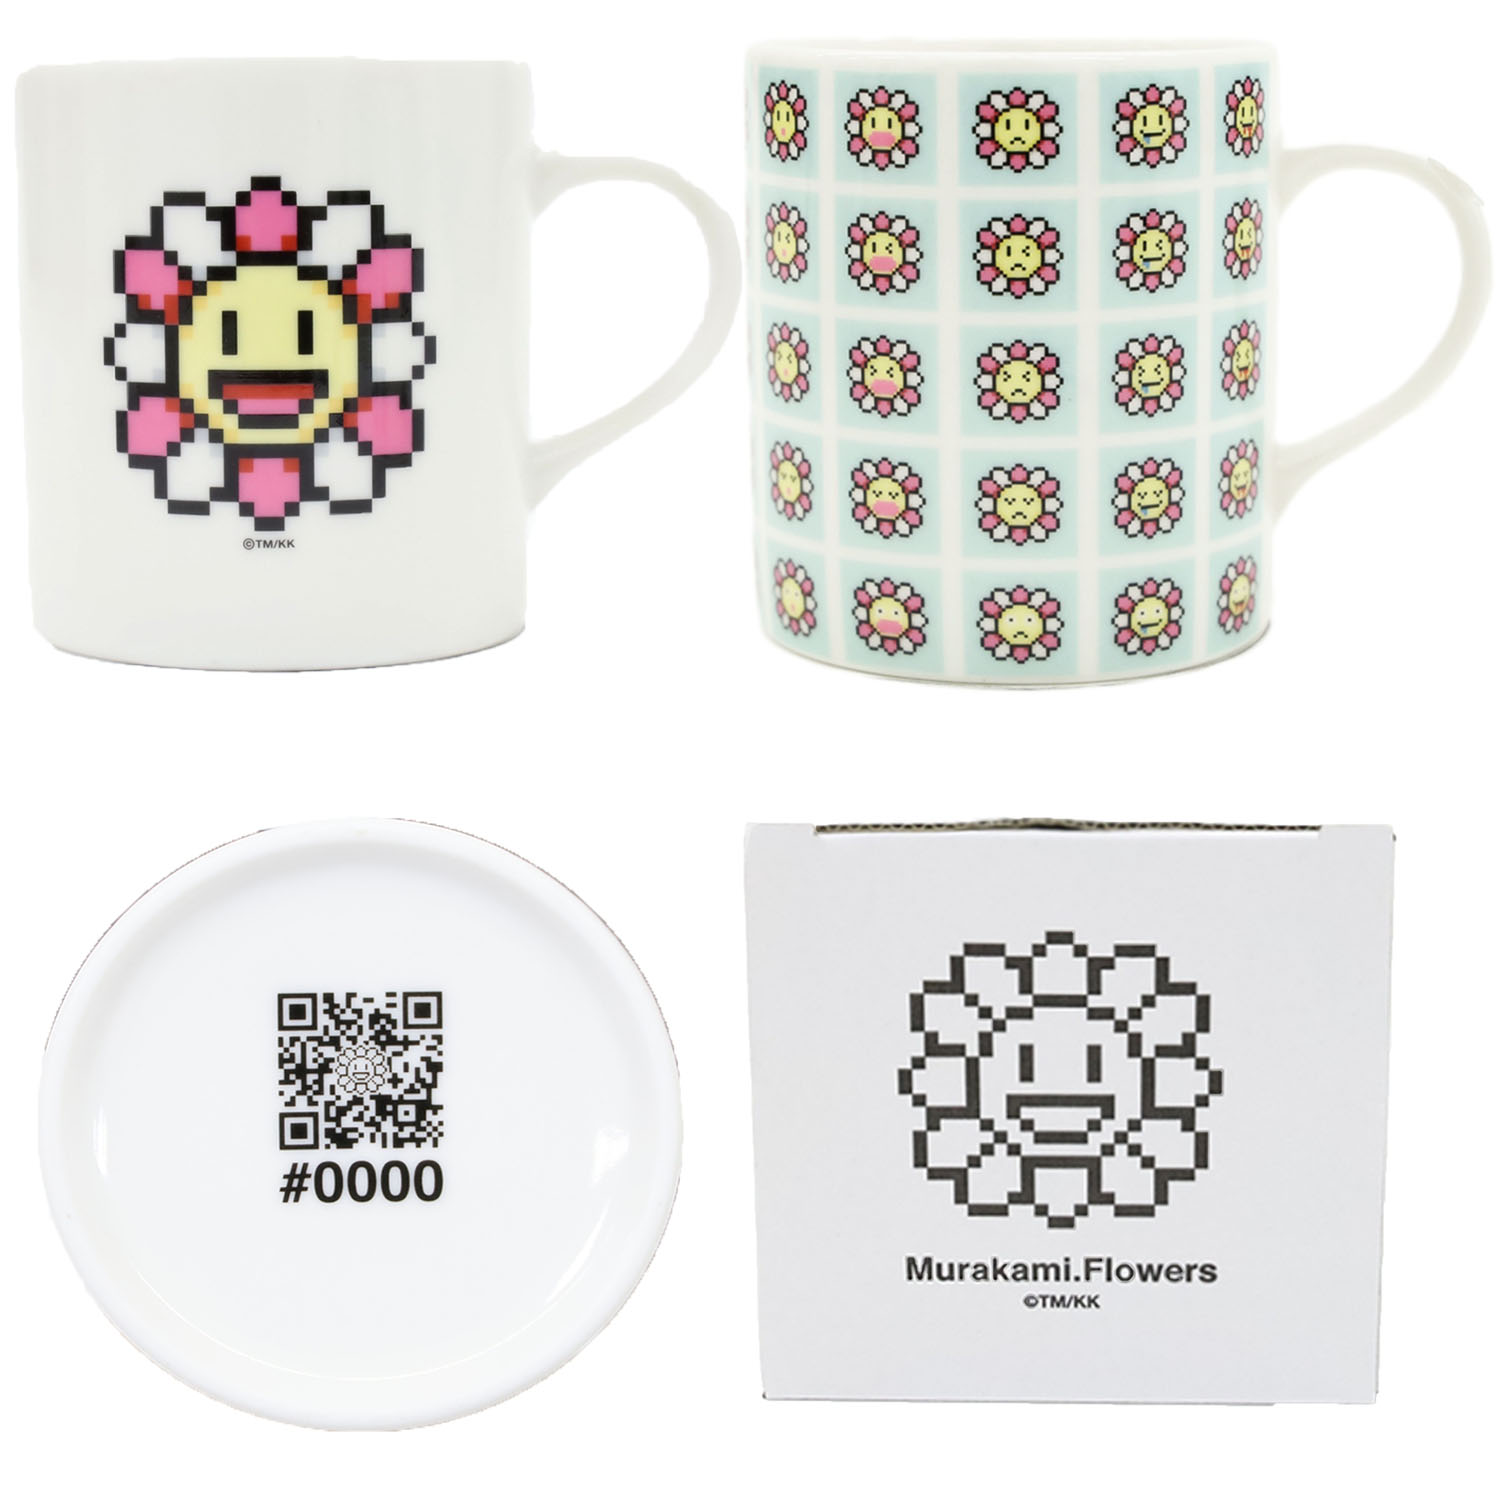 7月12日(月)よりWEBショップにて、Murakami.Flowersマグカップを販売 